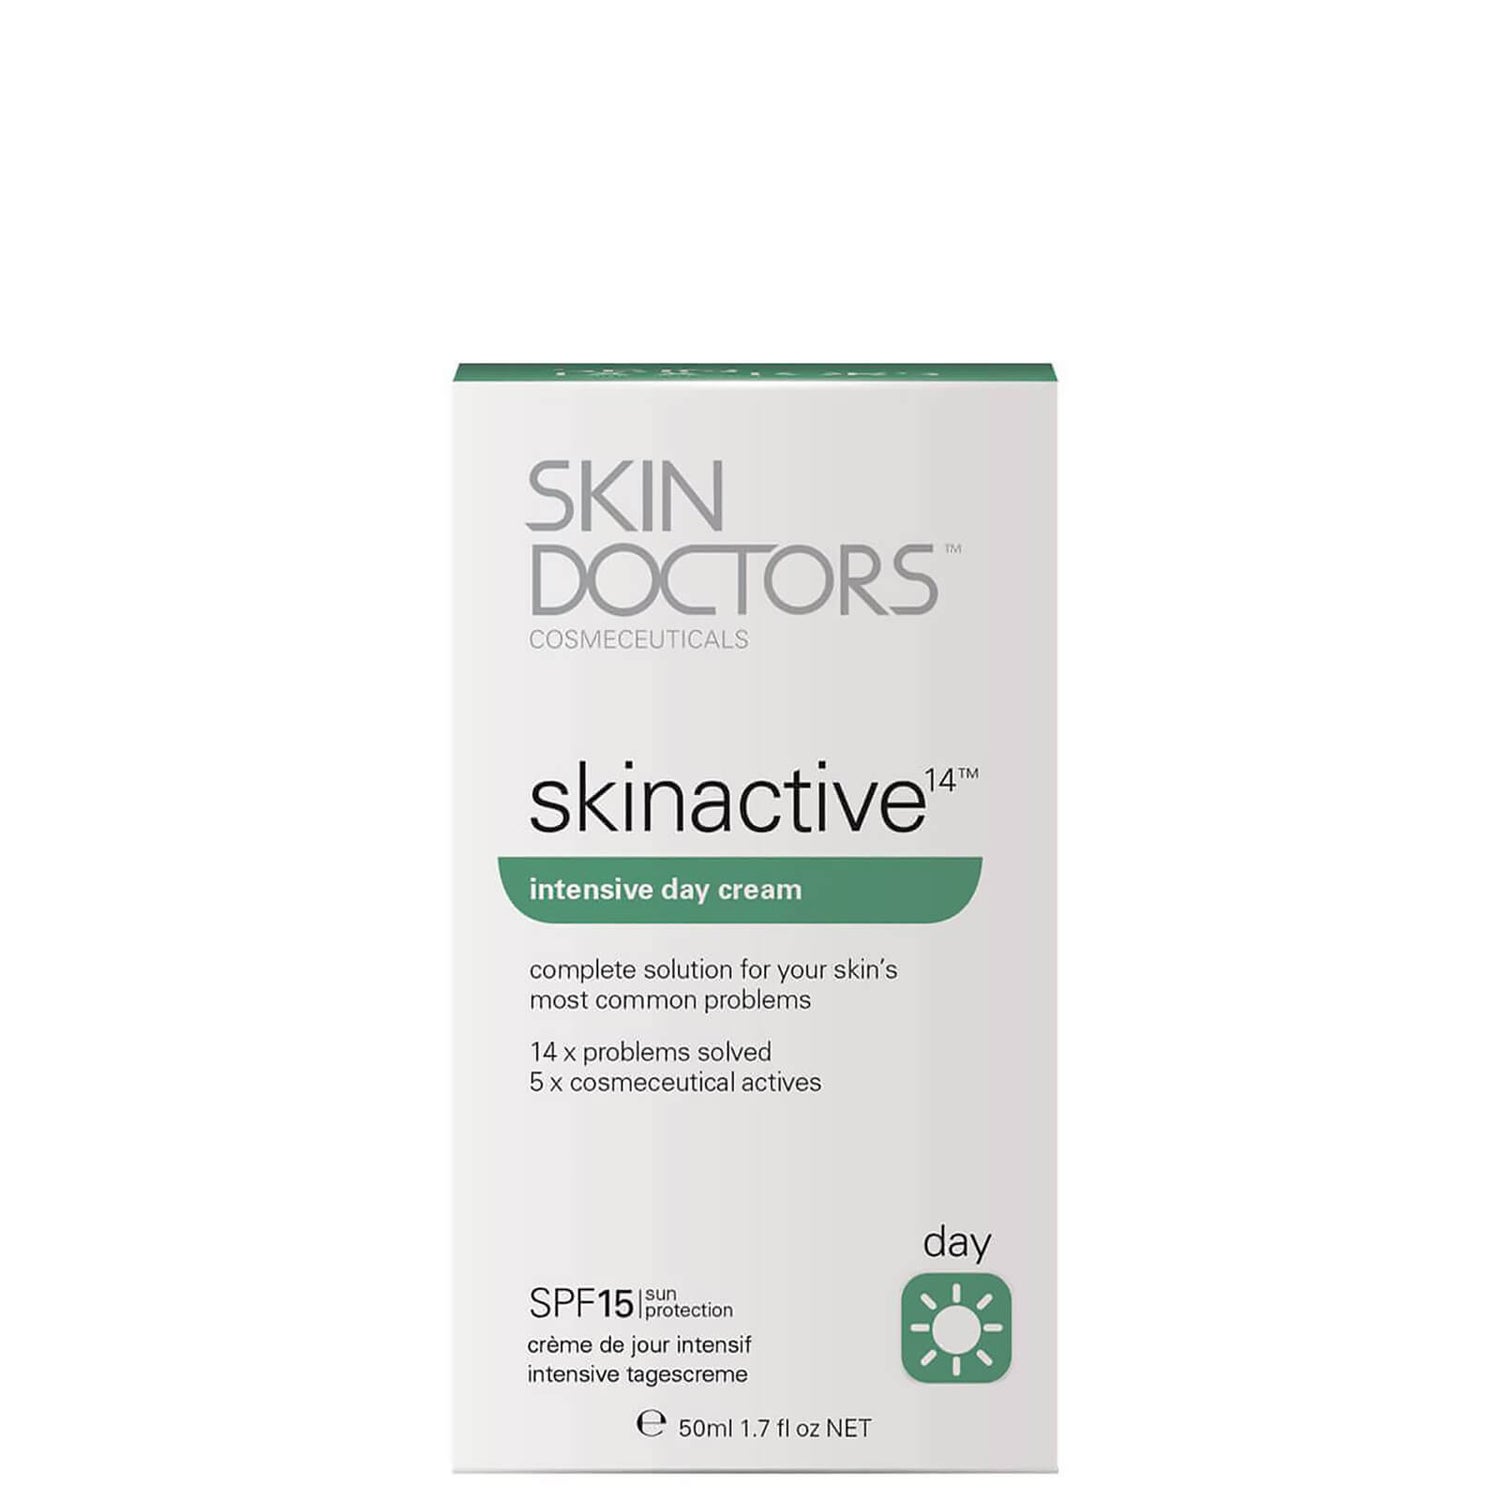 Skin Doctors Skinactive 14 Intensive Day Cream (50ml)